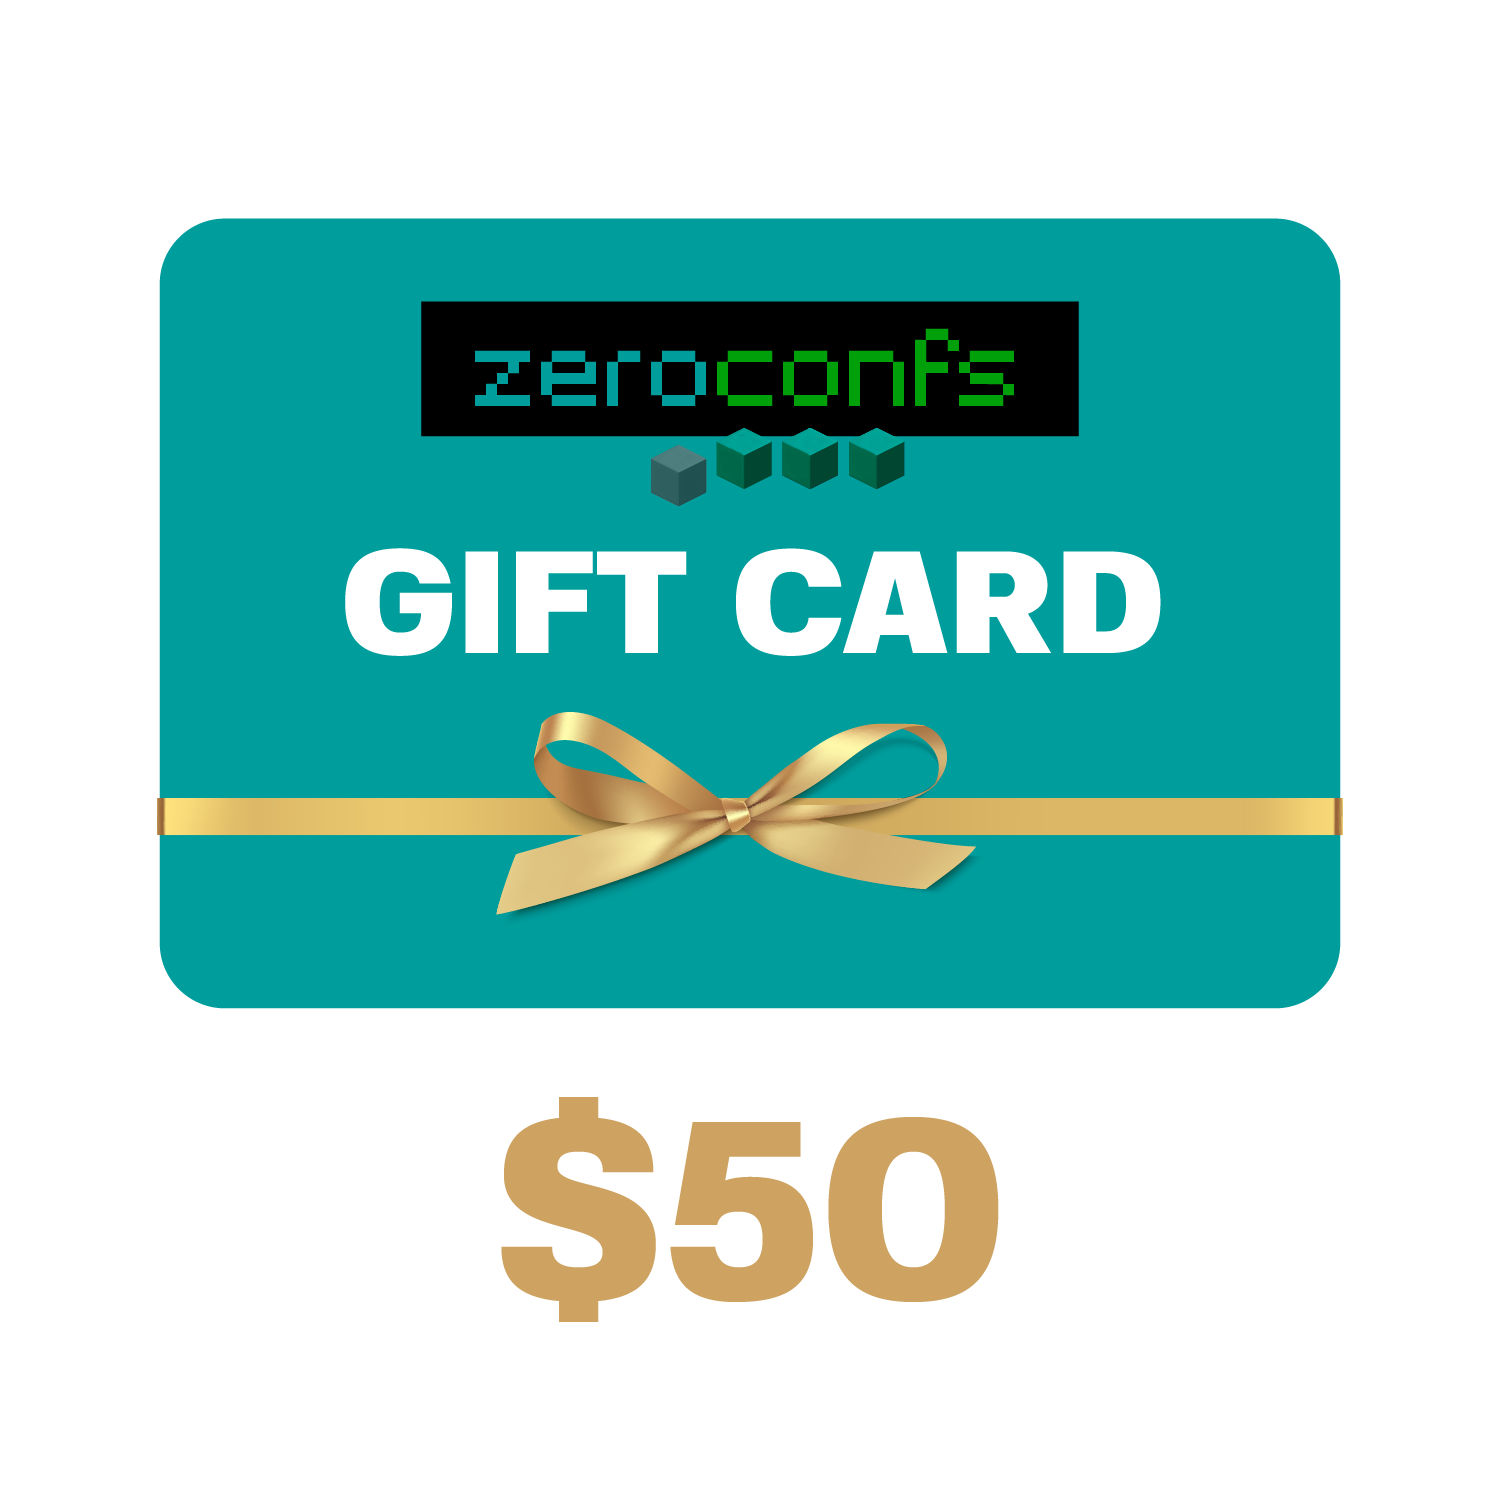 Gift Card zeroconfs